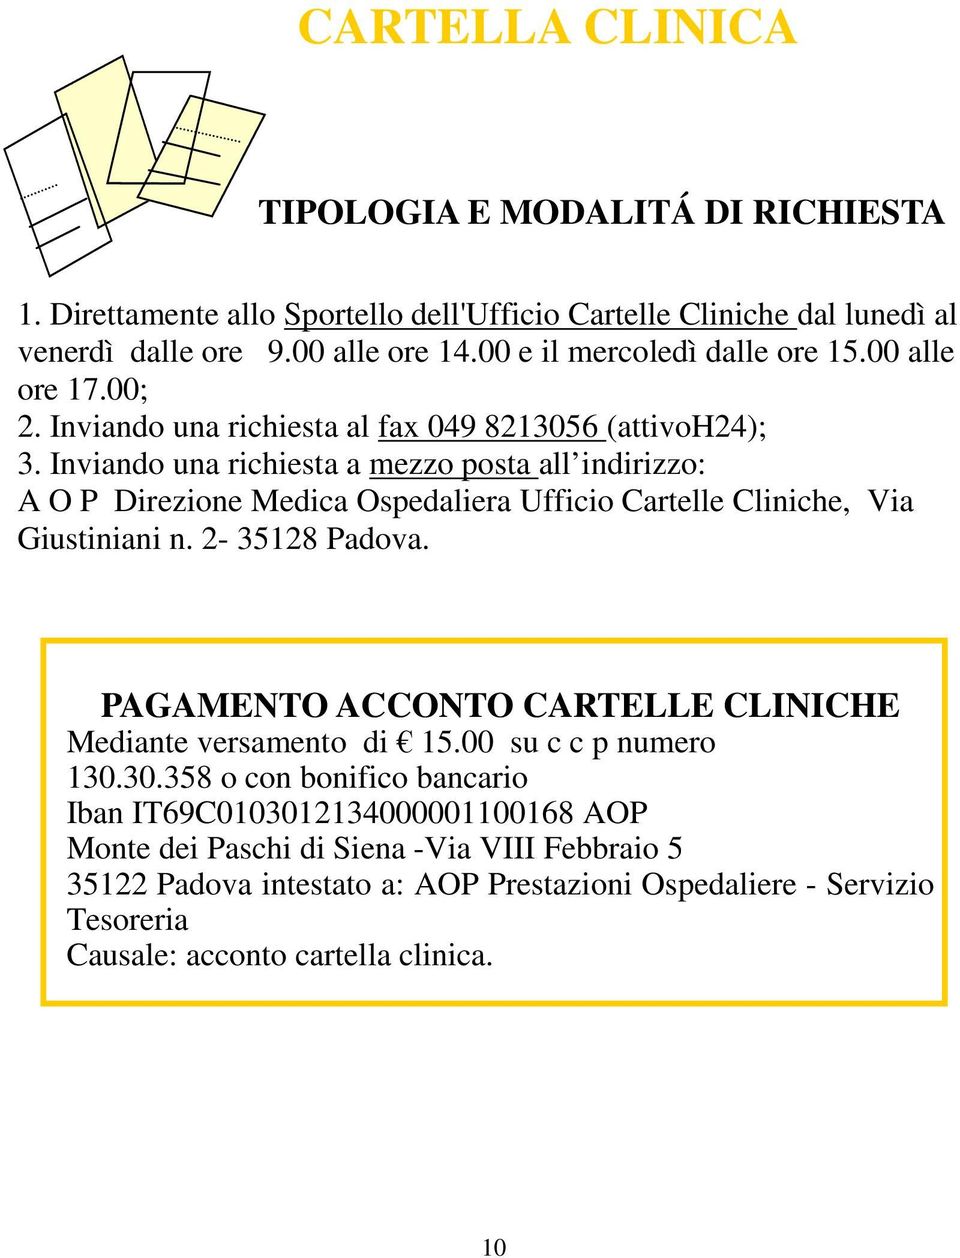 Inviando una richiesta a mezzo posta all indirizzo: A O P Direzione Medica Ospedaliera Ufficio Cartelle Cliniche, Via Giustiniani n. 2-35128 Padova.